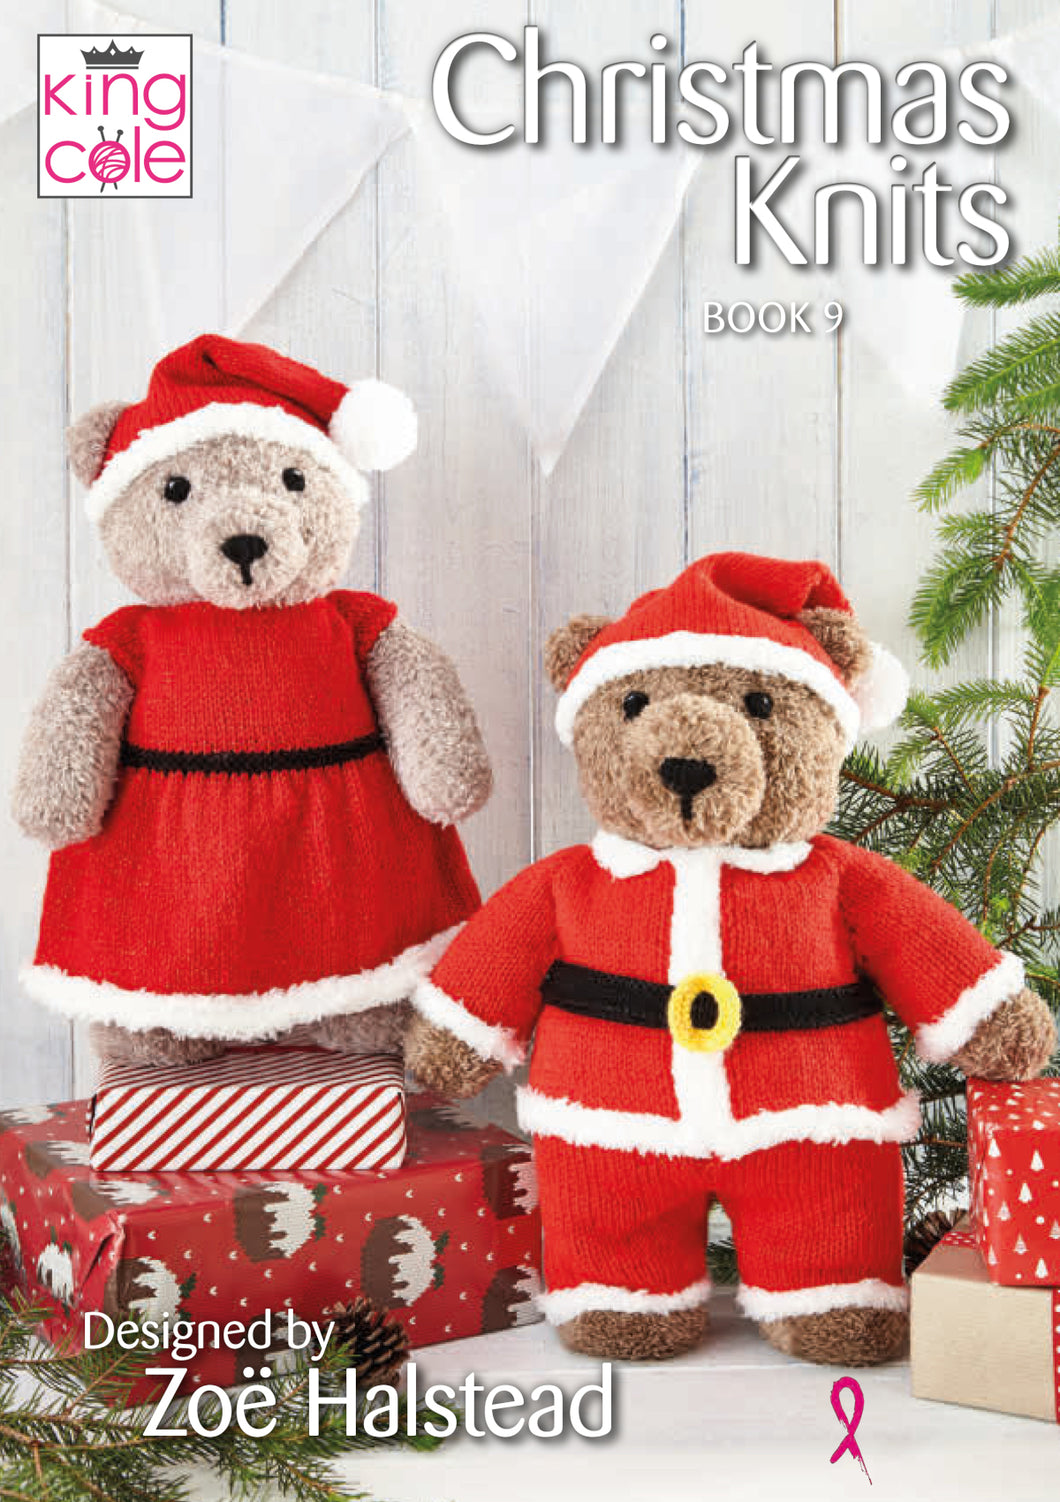 https://images.esellerpro.com/2278/I/220/975/king-cole-christmas-knits-book-9-1.jpg